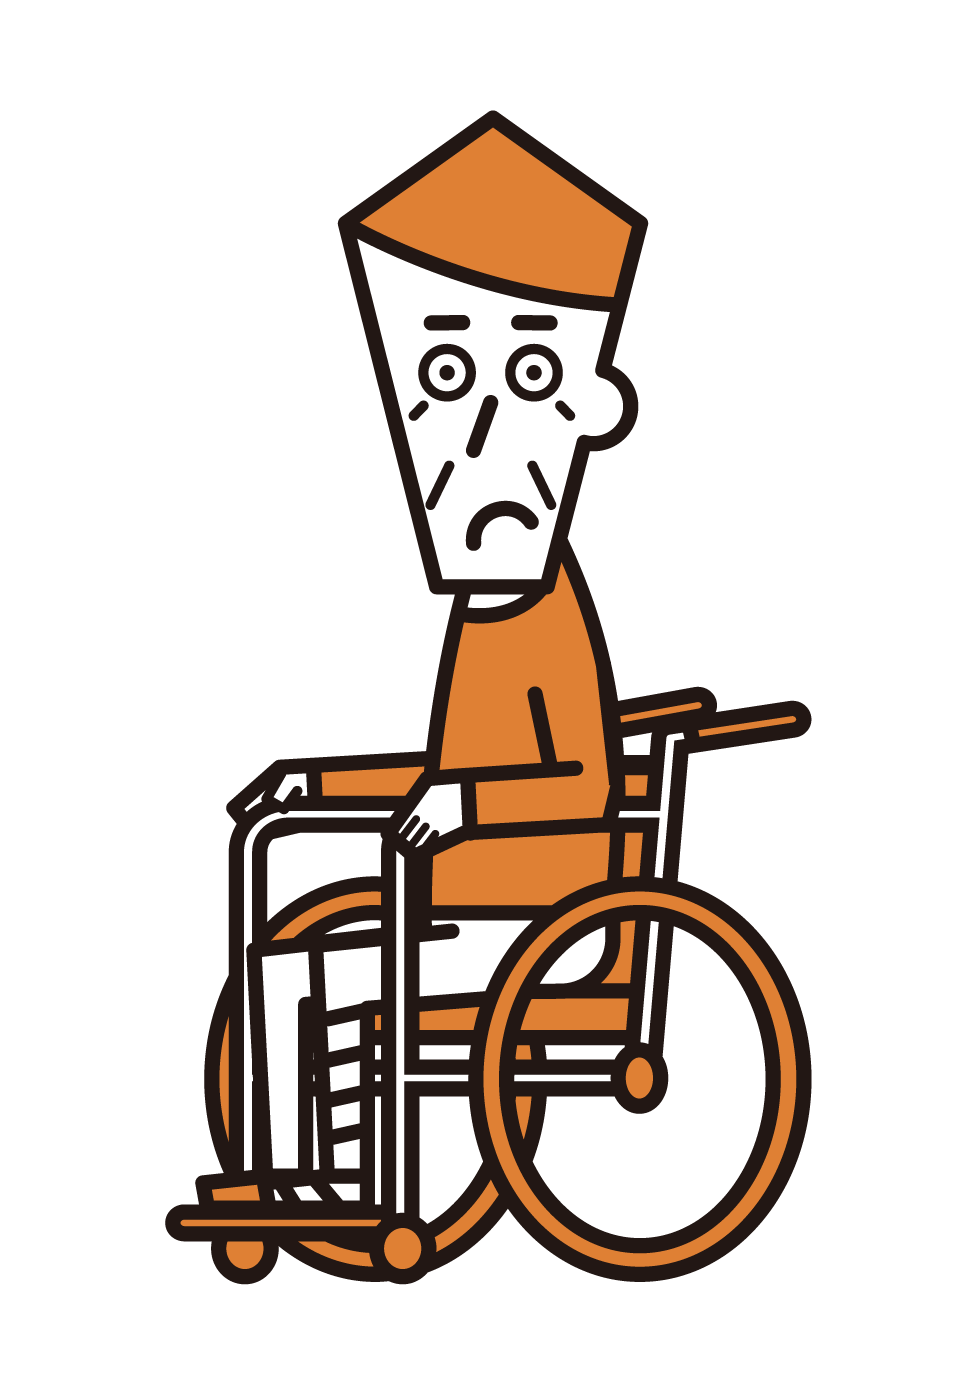 一個斷腿坐在輪椅上的人的插圖